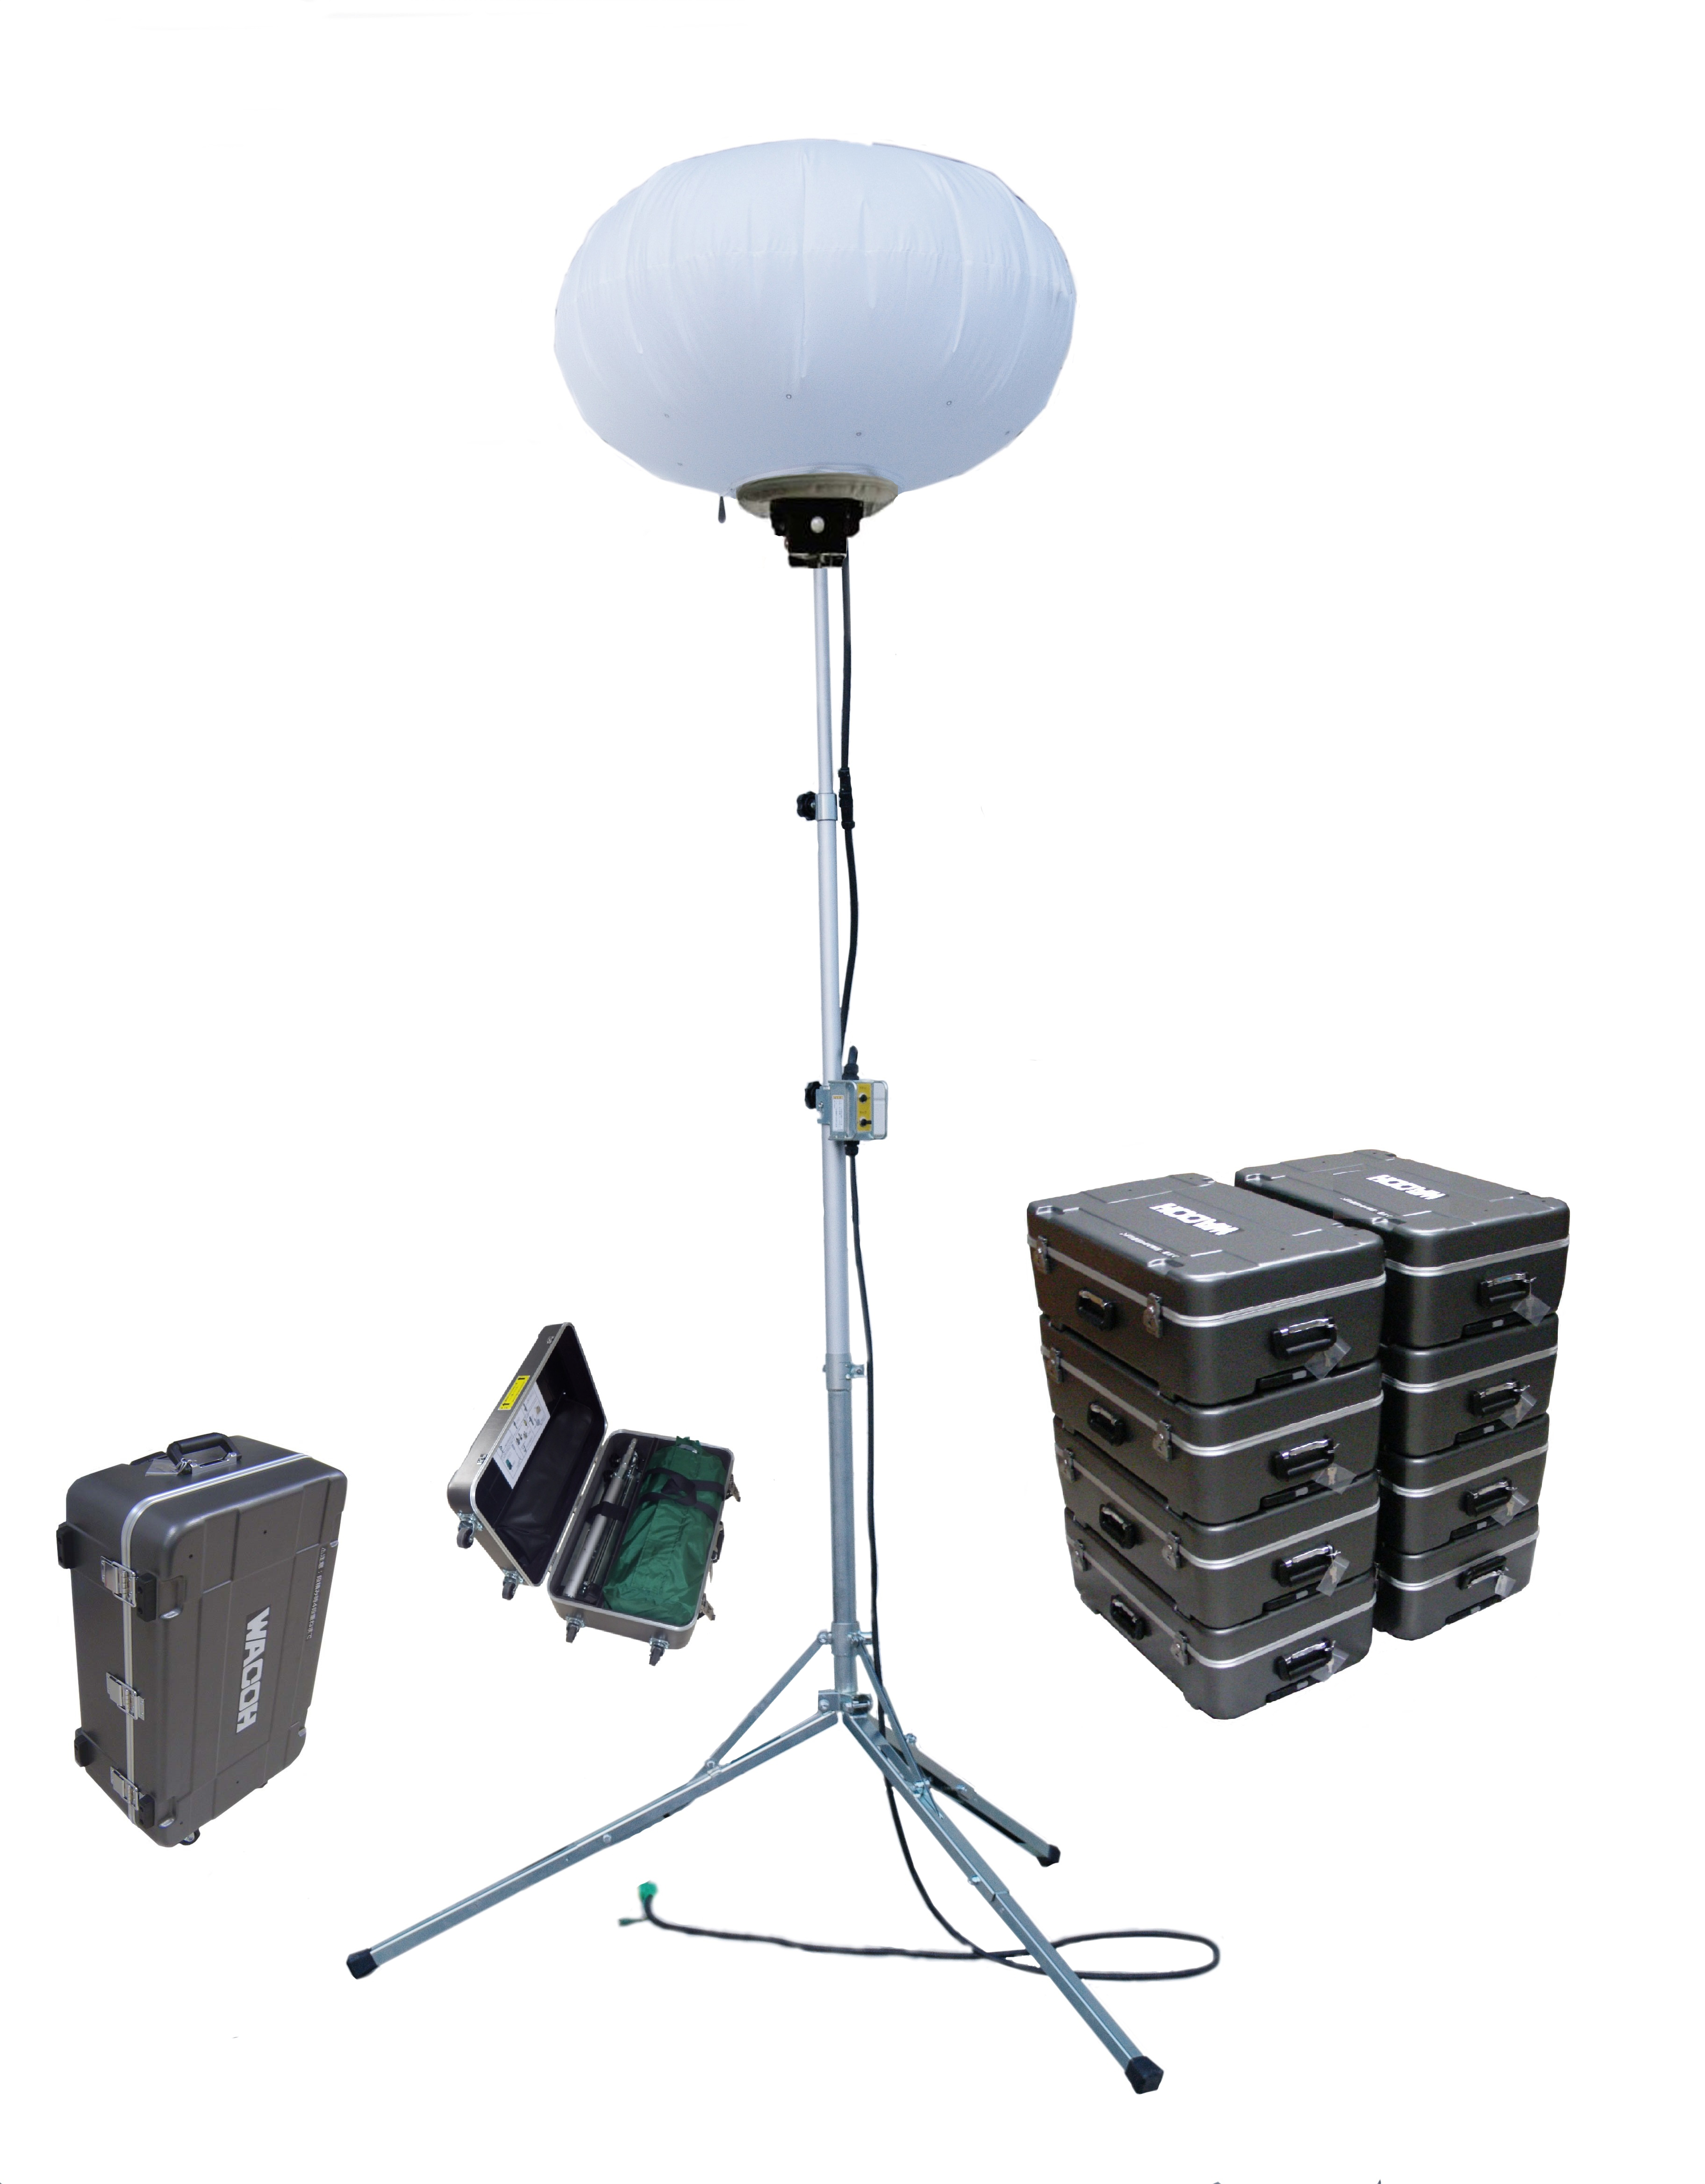 和光機械工業 LED300Wバルーン照明機(ハードケース入) WL301SLBAKS-2 - 4